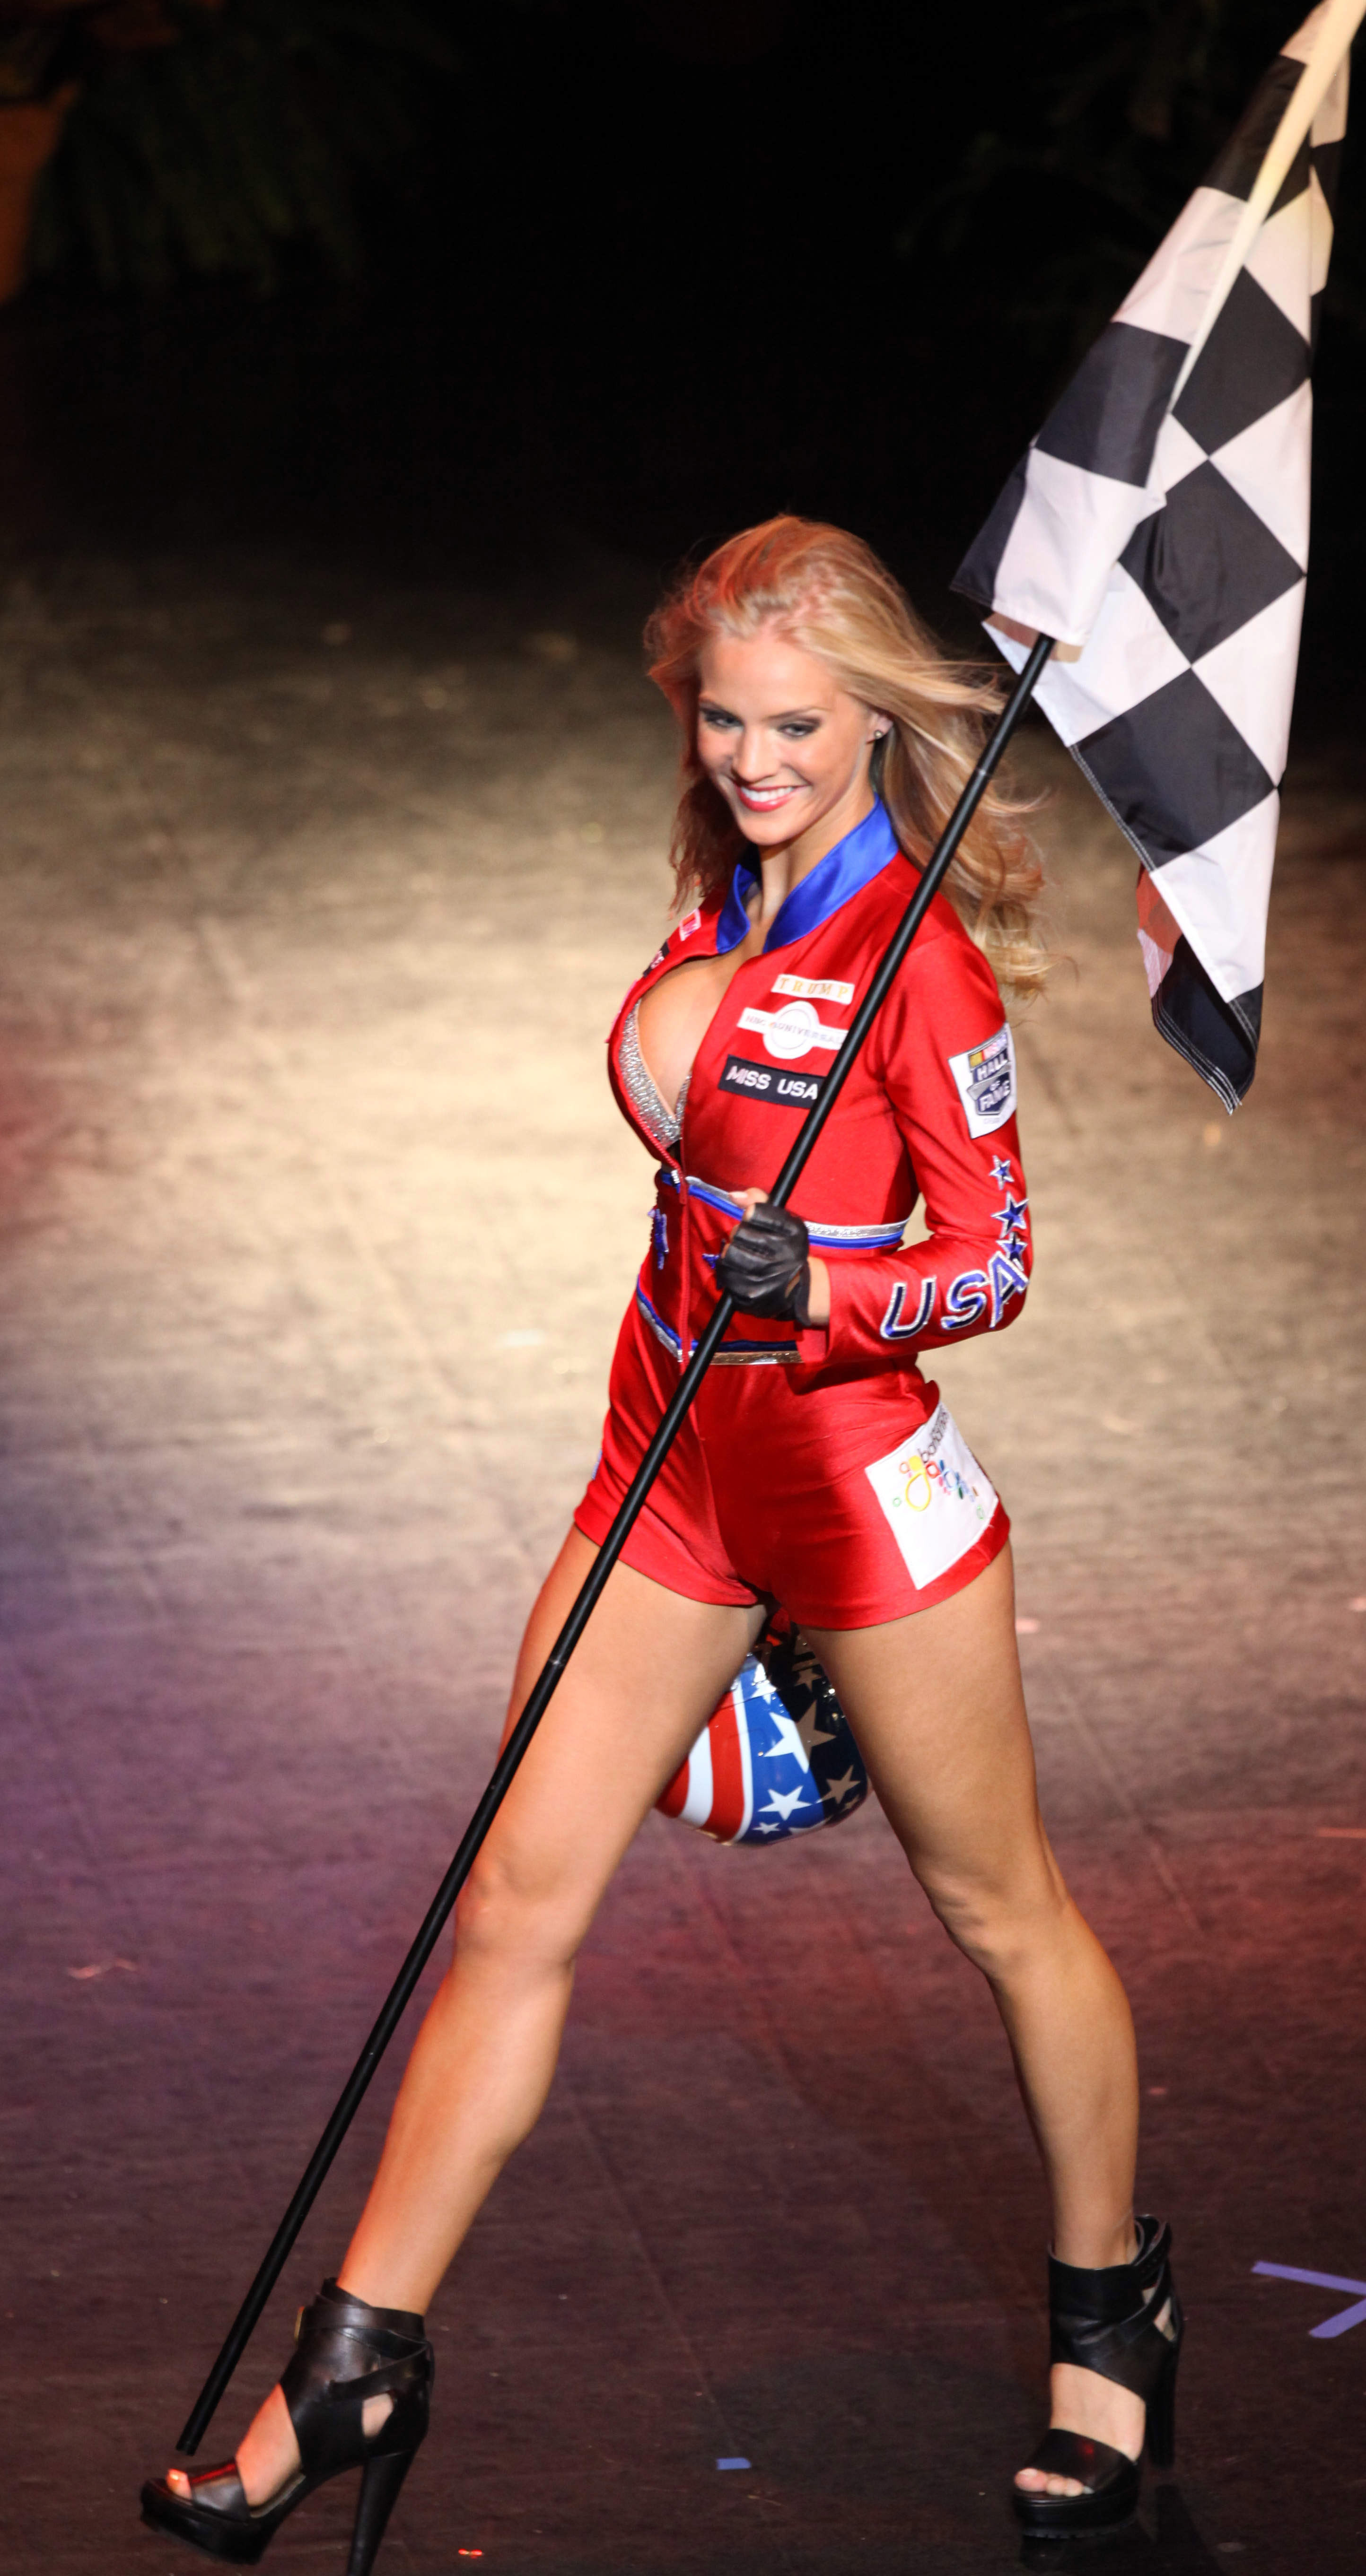 Miss USA as NASCAR